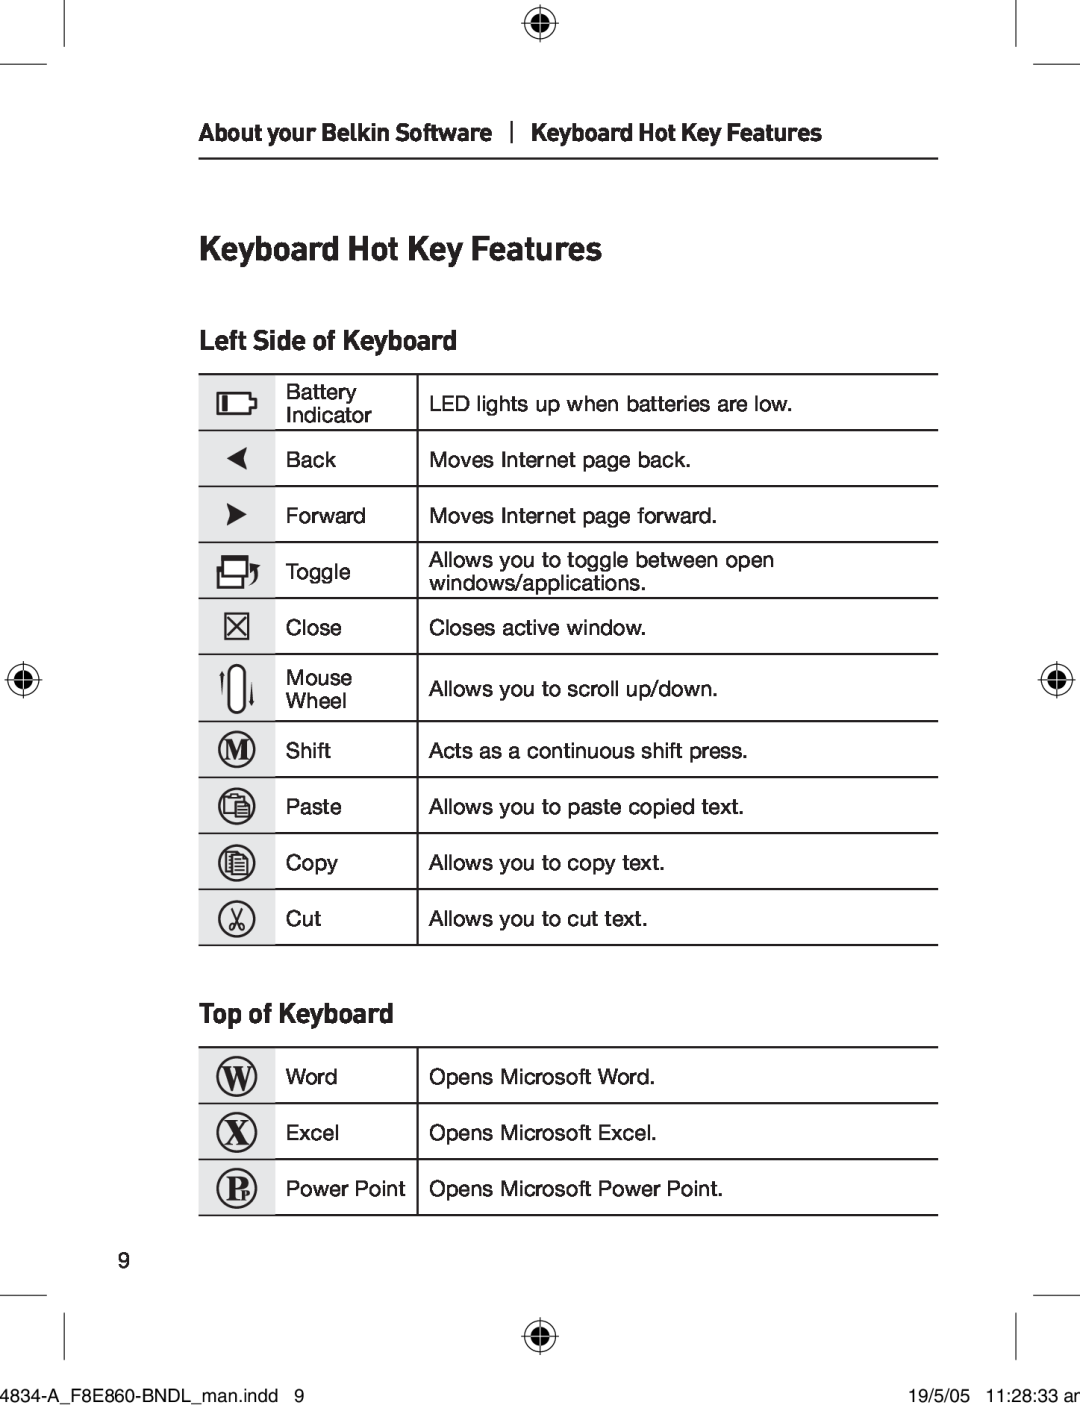 Belkin 280 manual Keyboard Hot Key Features, Left Side of Keyboard, Top of Keyboard 